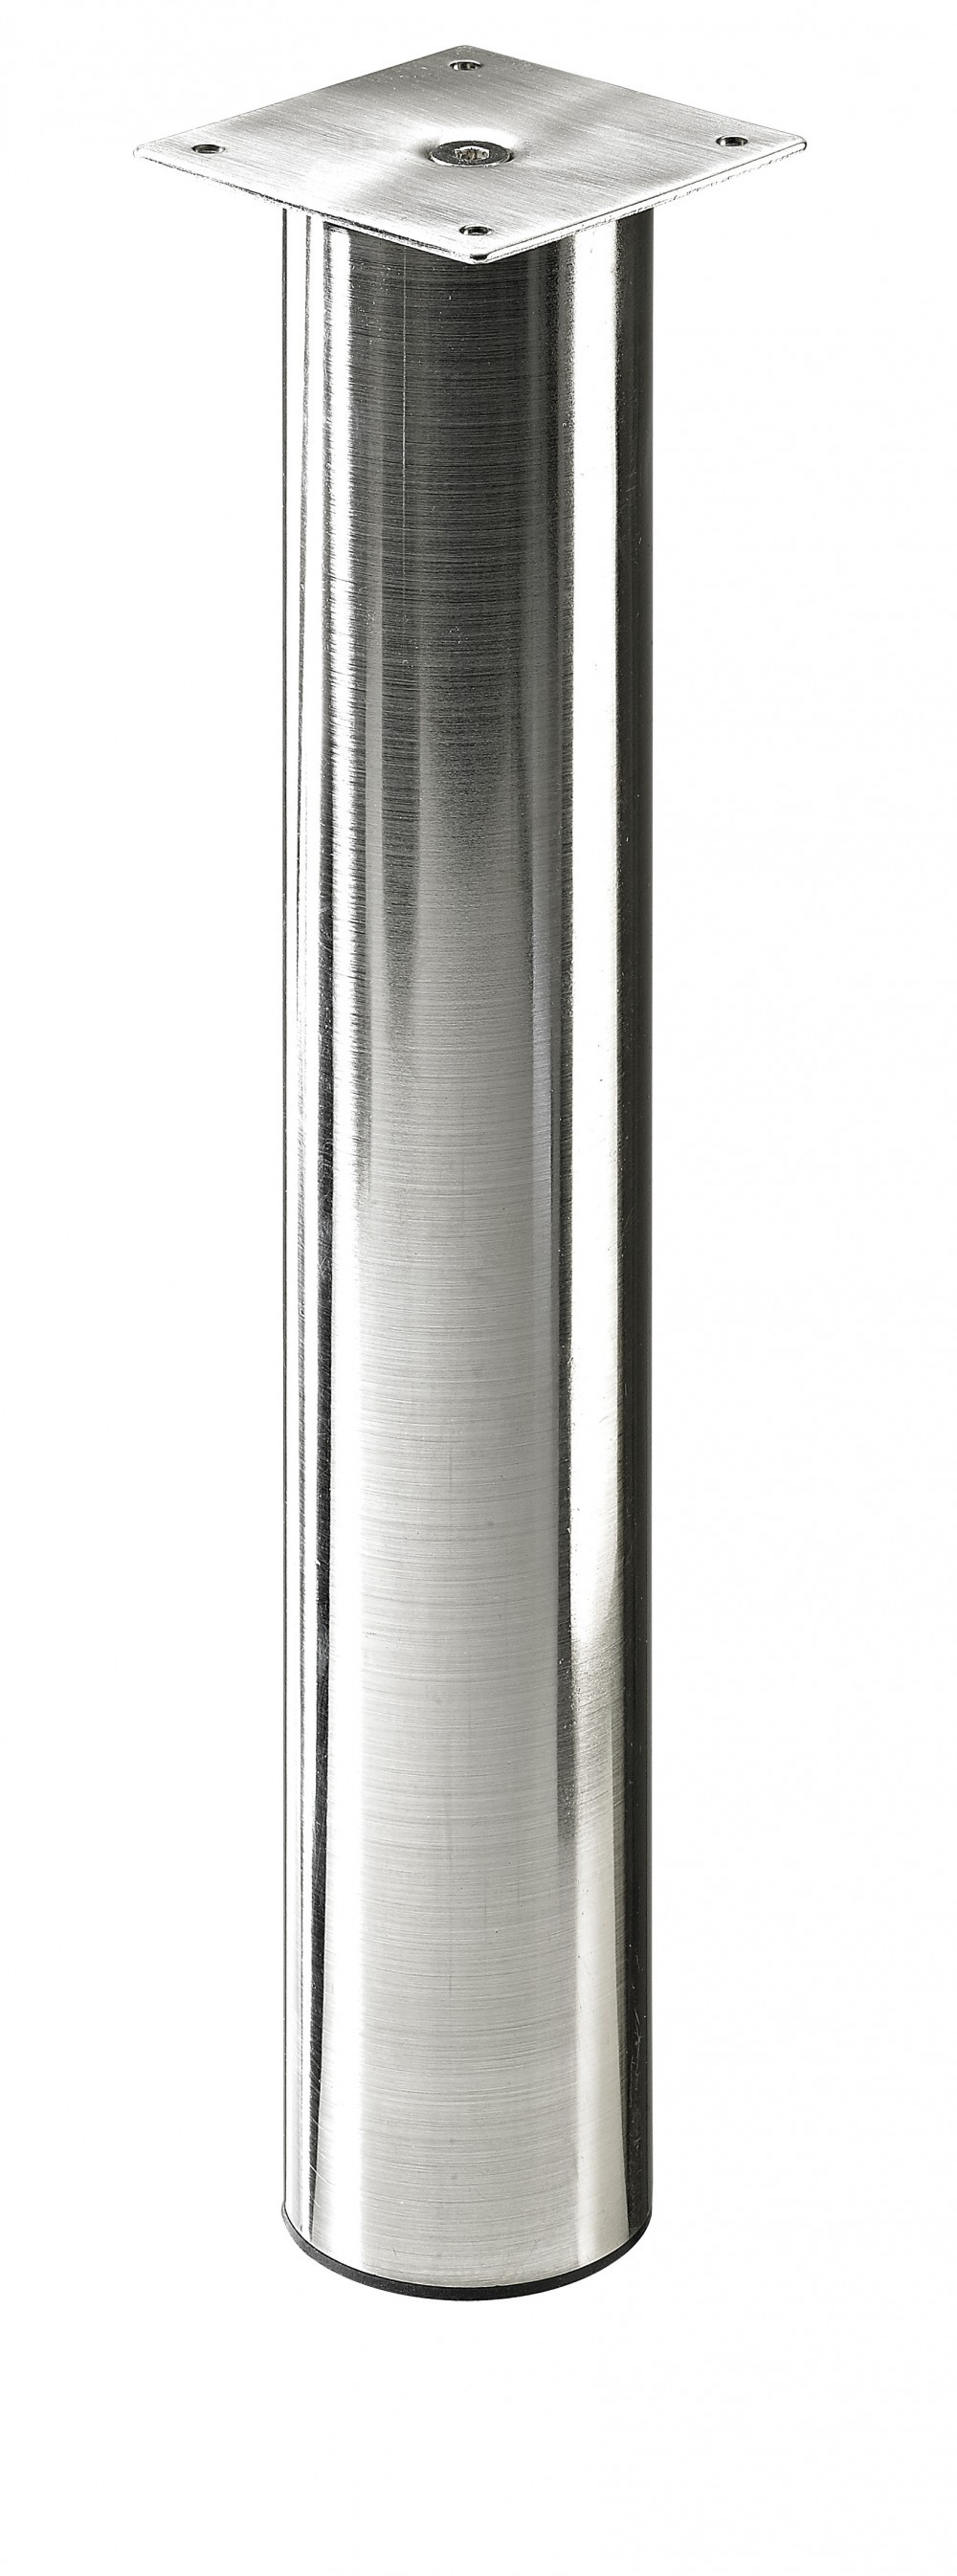 Pied de plan de travail cylindrique réglable acier brossé gris, de 40 à 70 cm